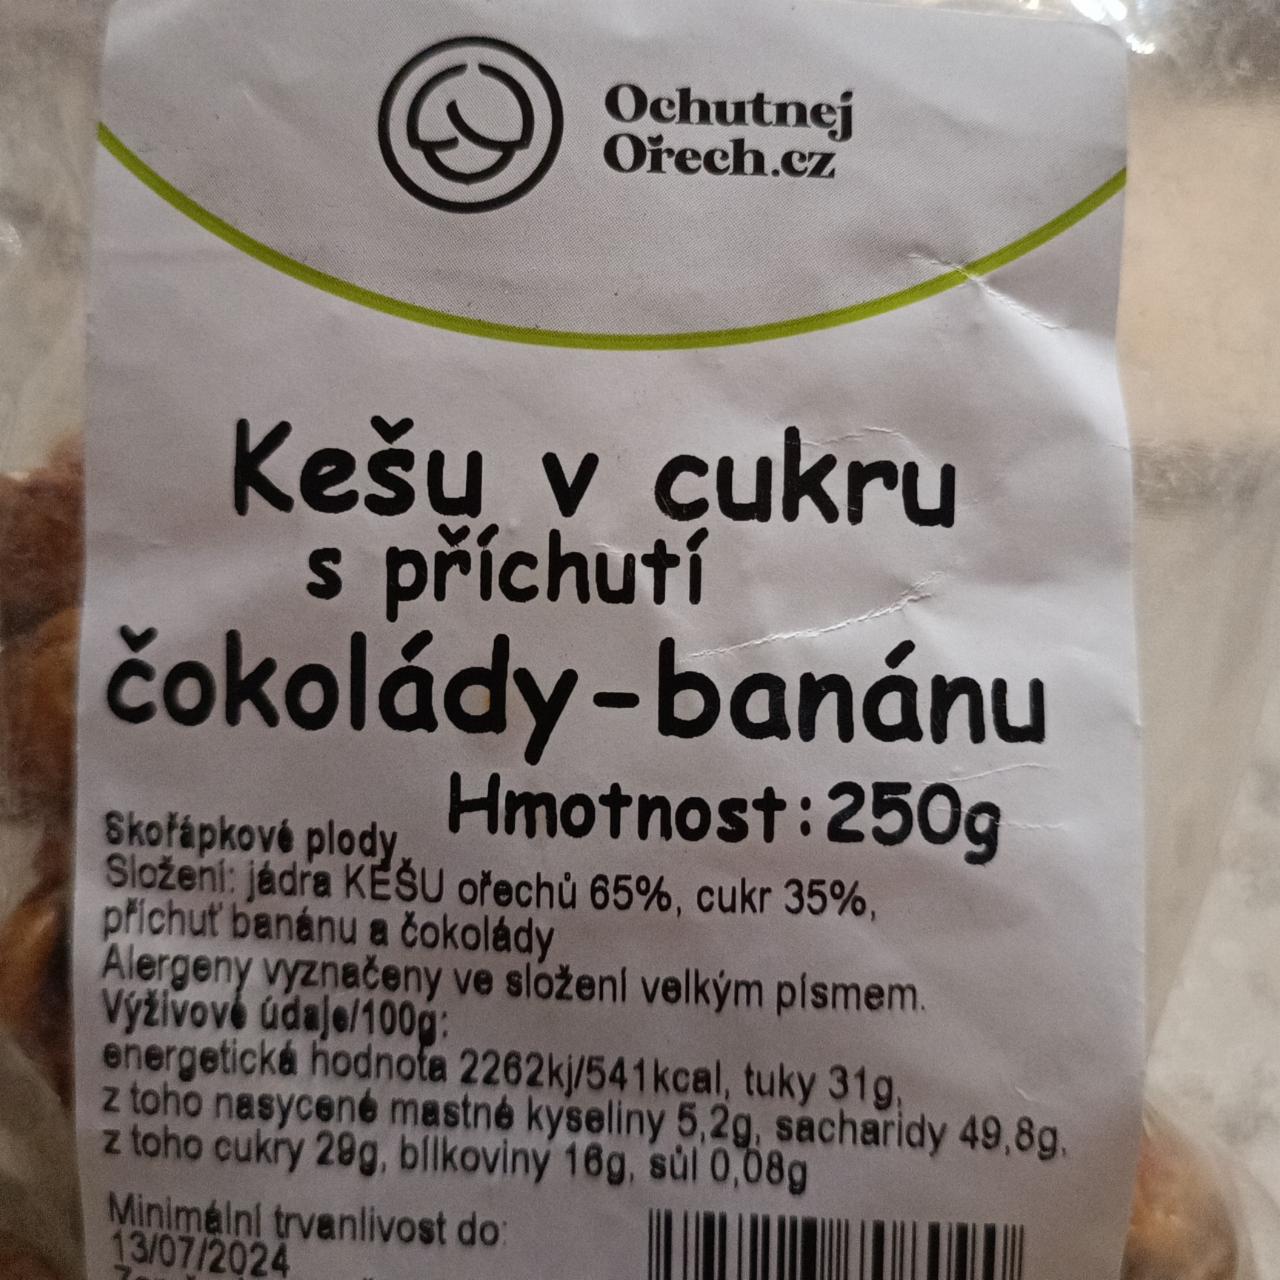 Fotografie - Kešu v cukru s příchutí čokolády-banánu Ochutnejorech.cz